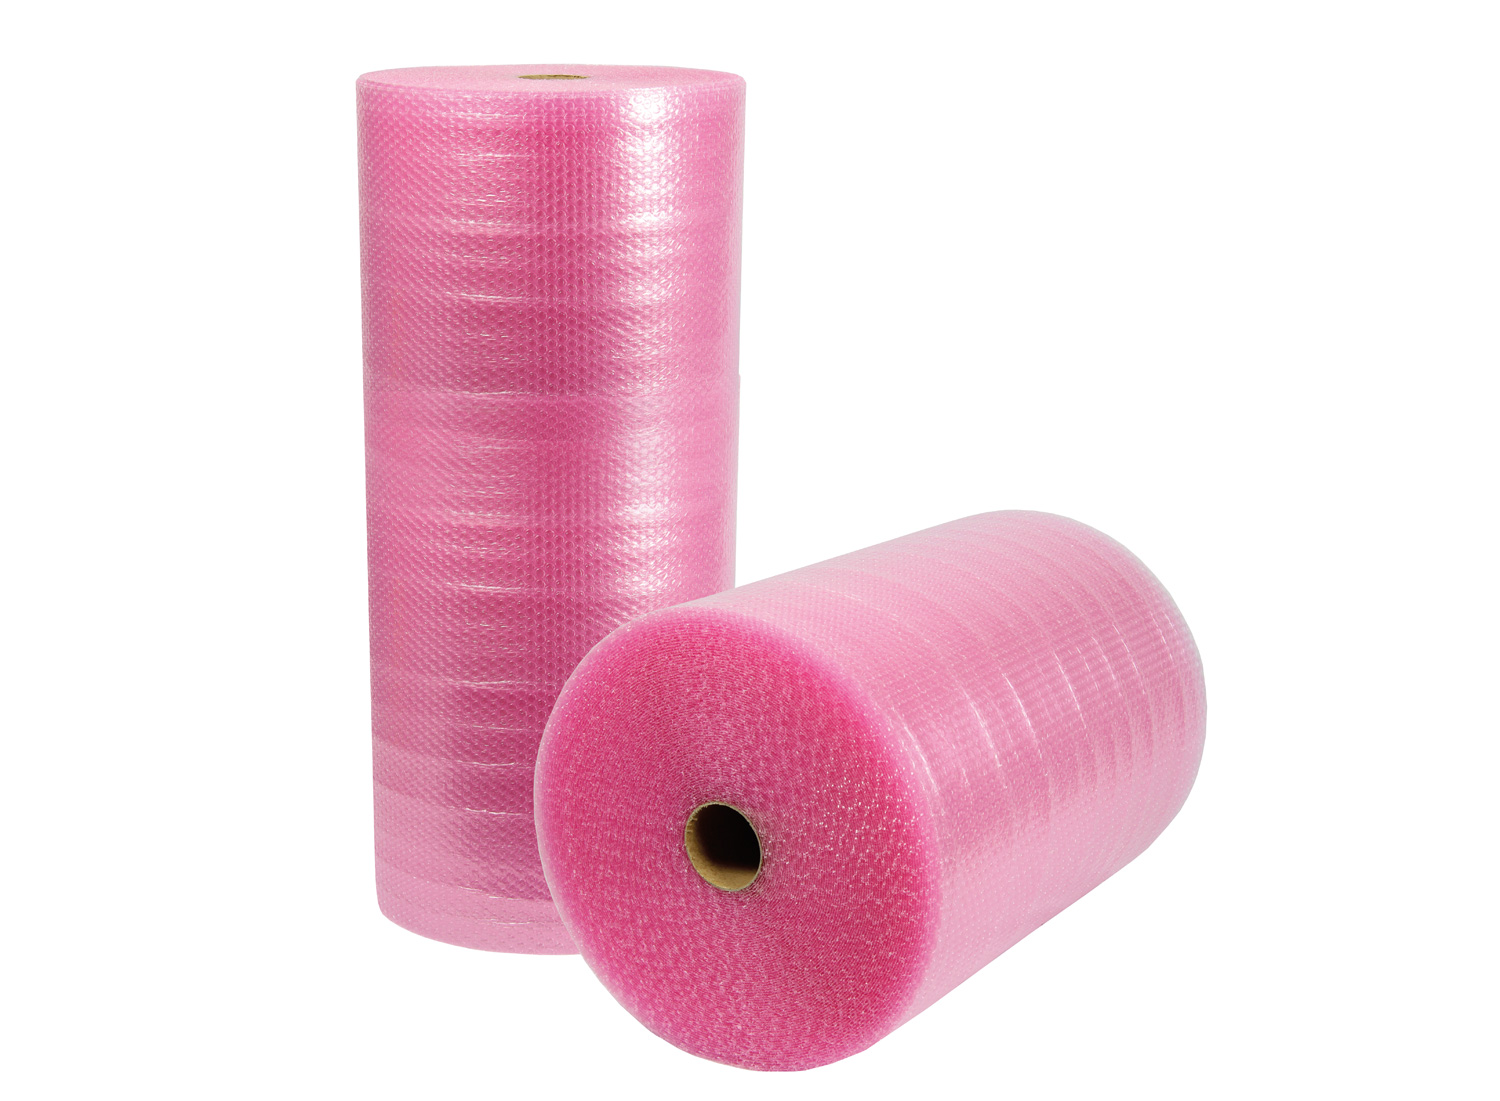 Luftpolsterfolie, 3-lagig, 1200mm breitx50lfm, 100µ,, rosa, antistatisch